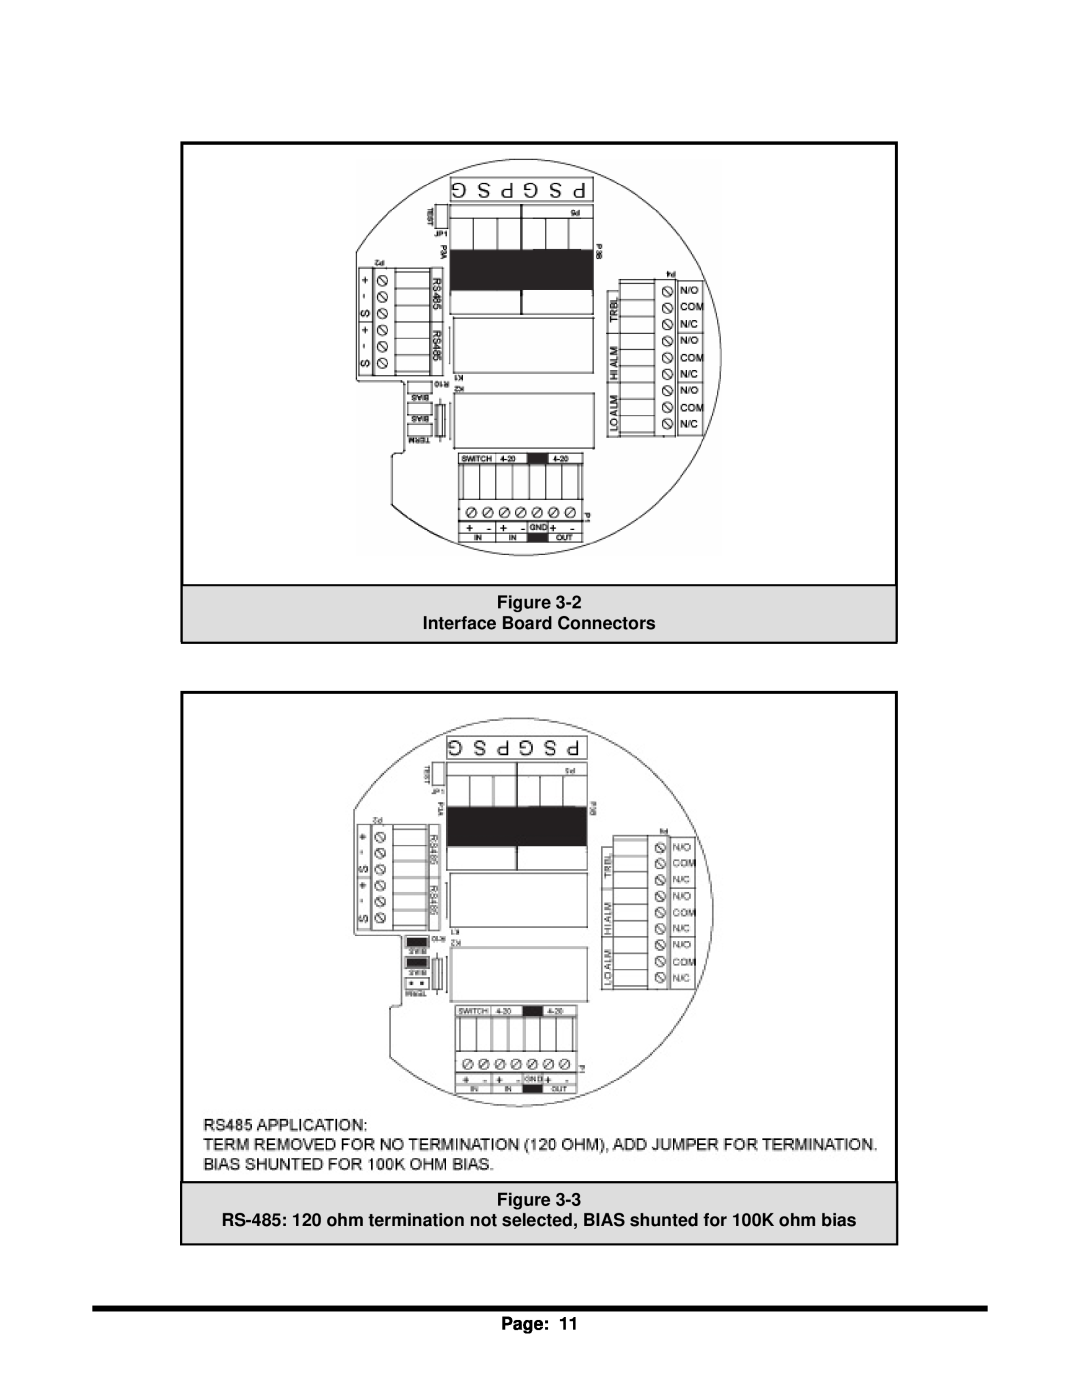 Sierra Monitor Corporation T12020, 5100-06-IT, 5100-05-IT, 5100-04-IT Figure Interface Board Connectors Figure, Page 